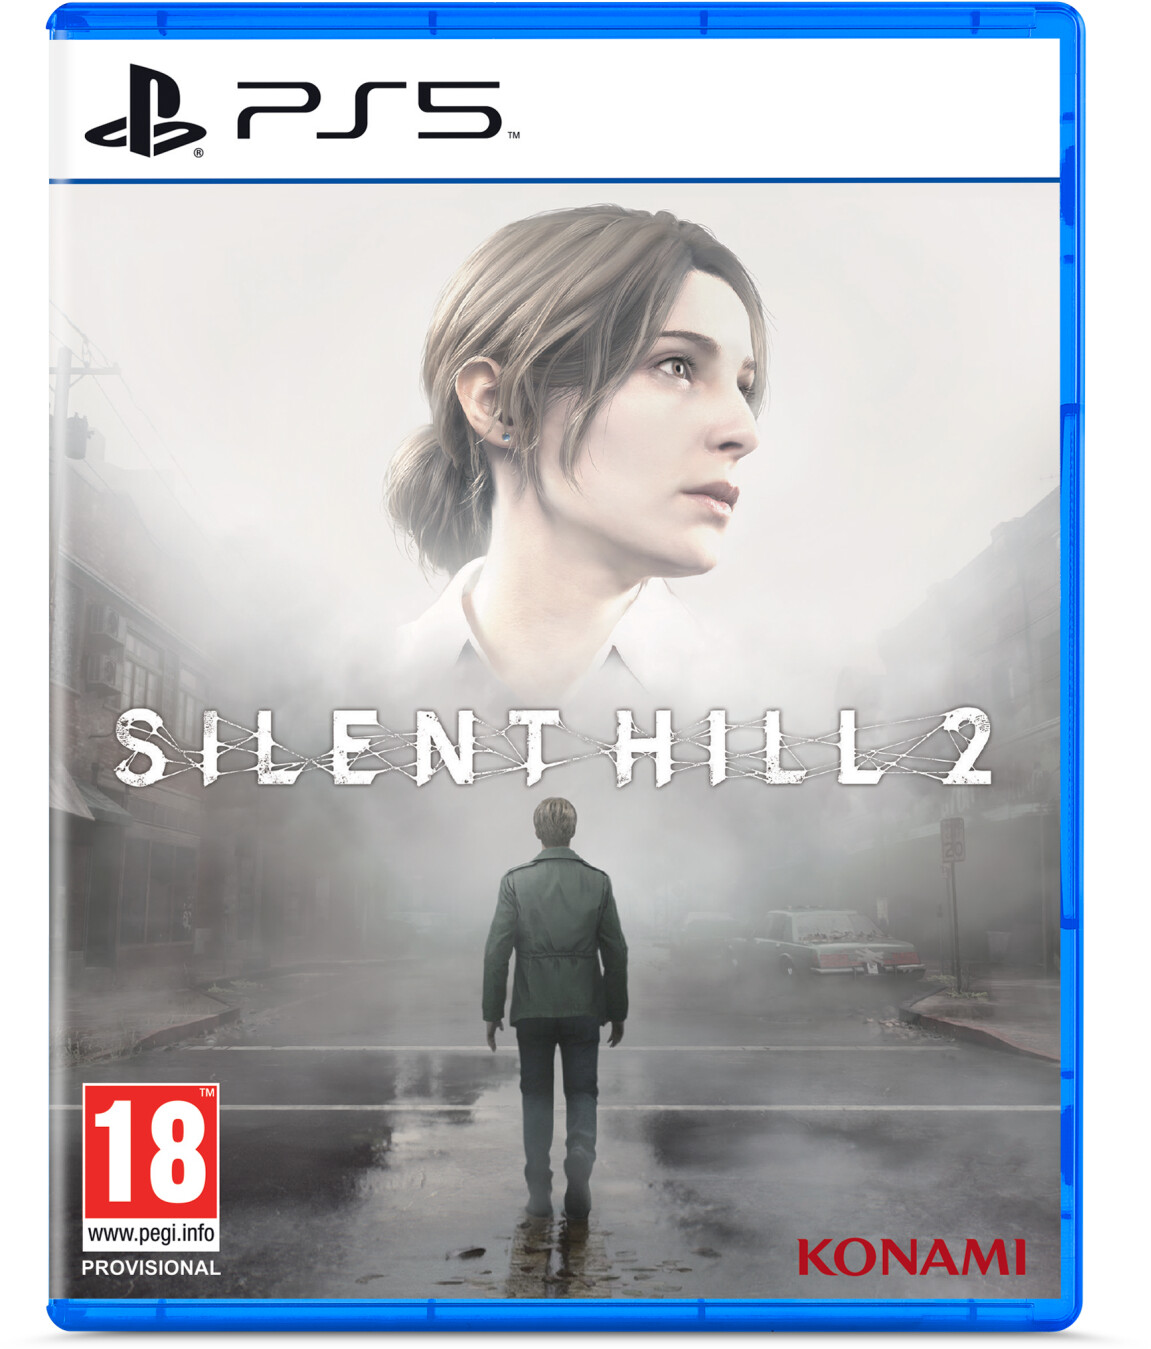 El remake de Silent Hill 2 podría ser exclusivo de PS5 según un